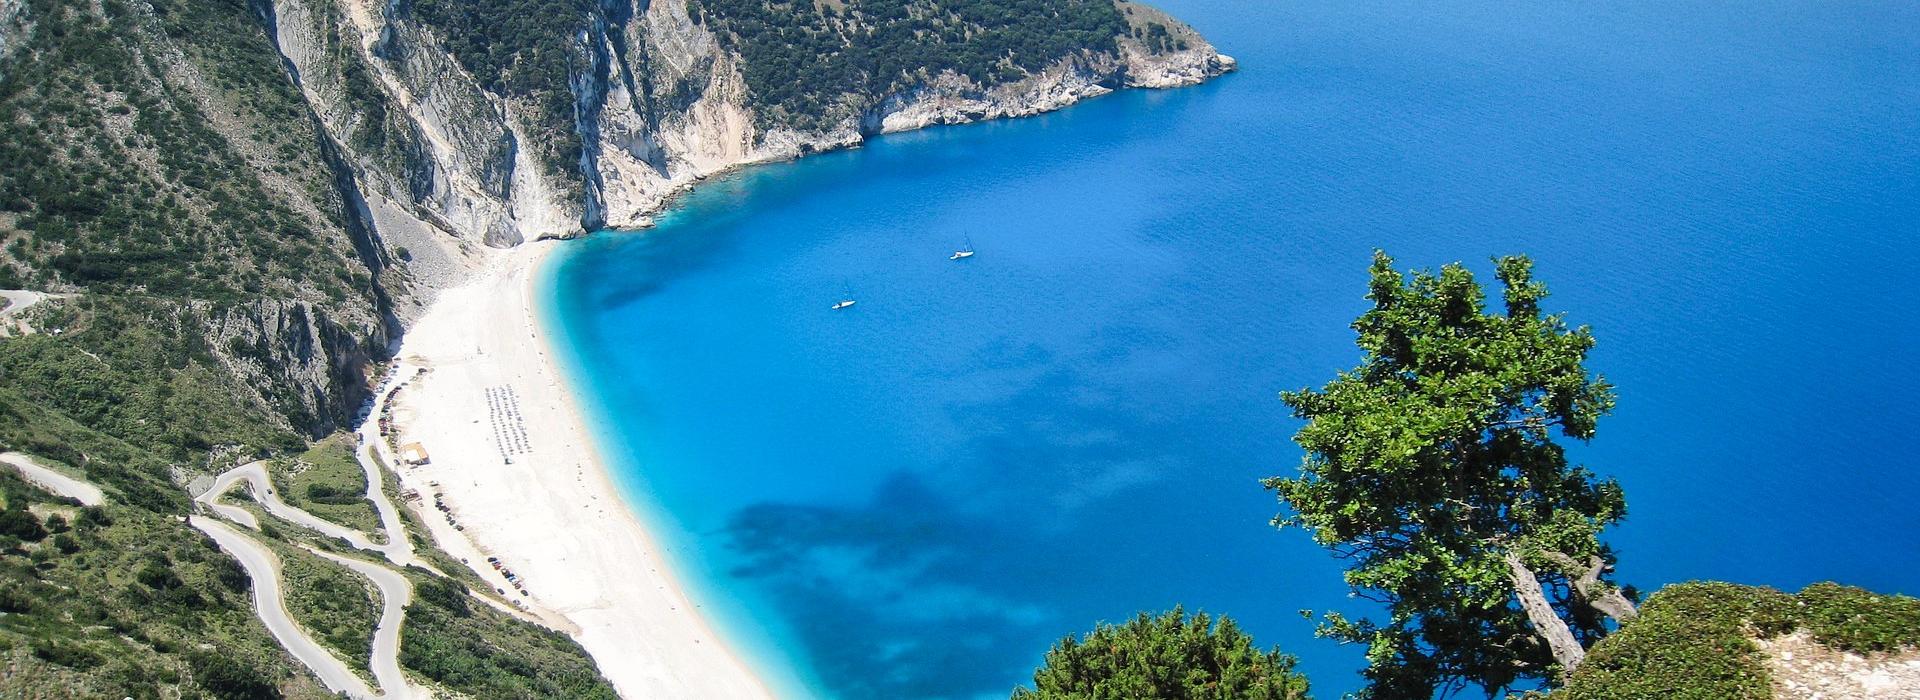 Griechenland Urlaub ☀️ Jetzt günstig buchen